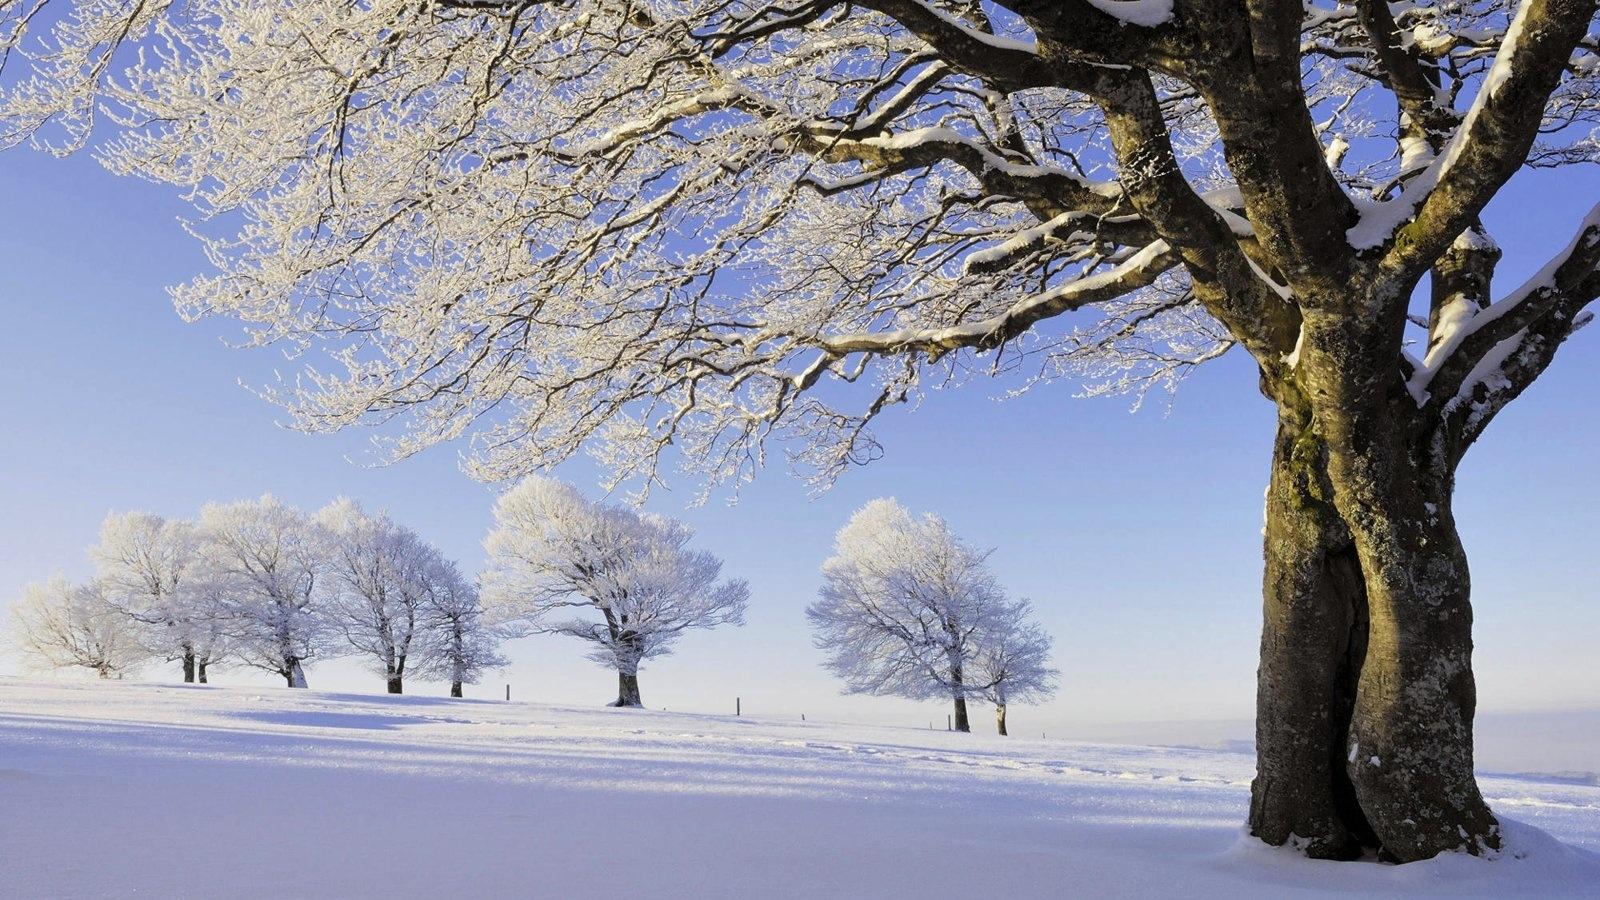 雪中的树冷色风景高清壁纸大全 高清桌面壁纸下载 -找素材网